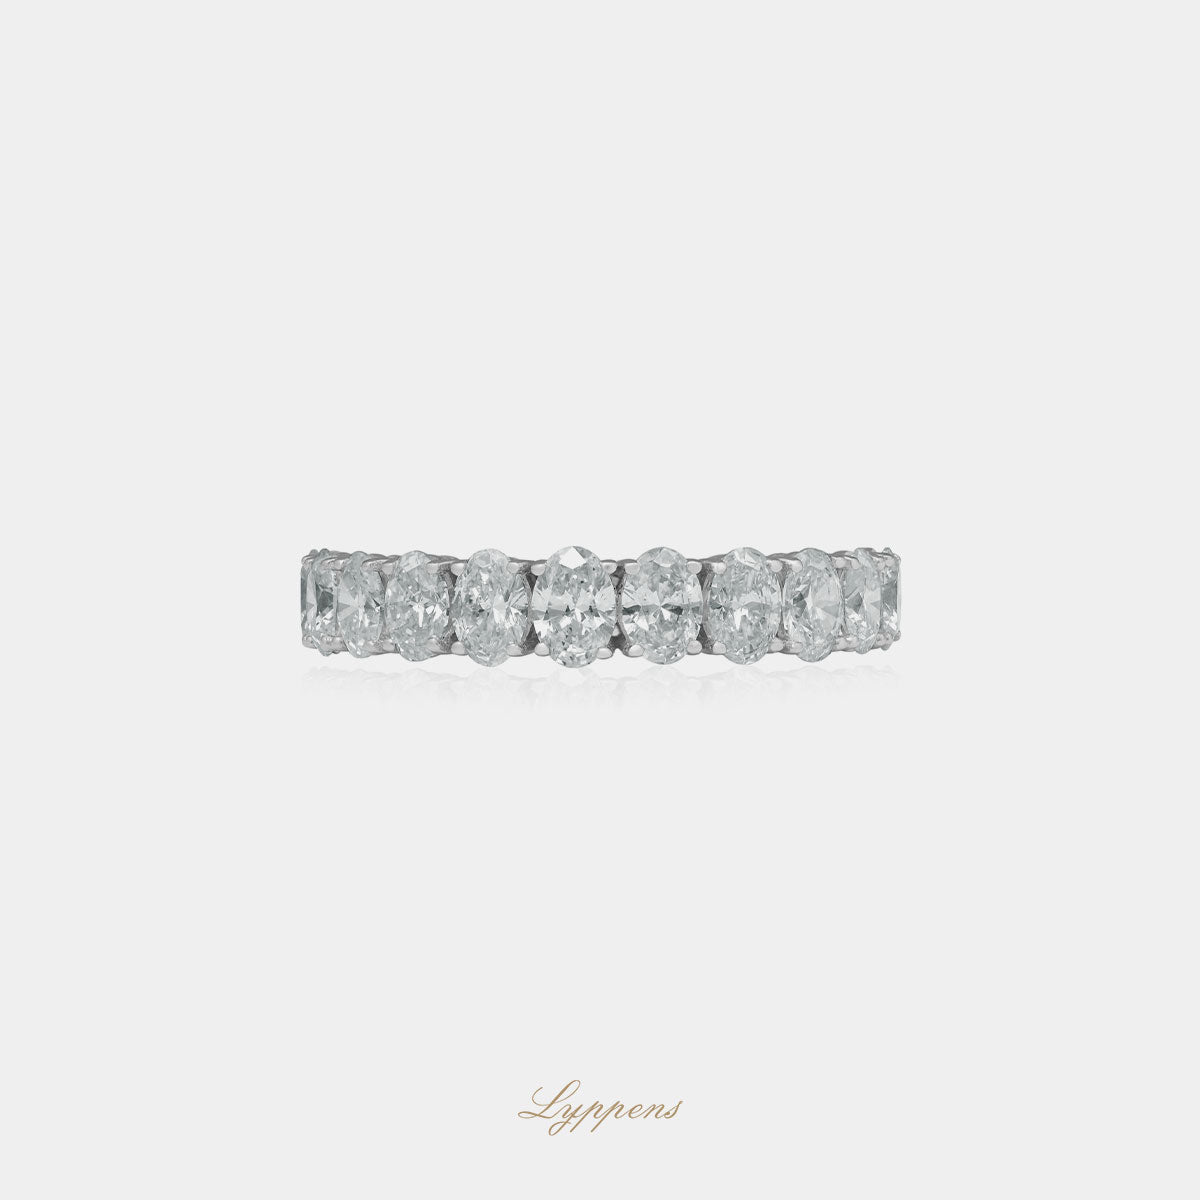 Witgouden rijring met ovaal geslepen diamant, deze ring kan ook als trouwring gedragen worden.